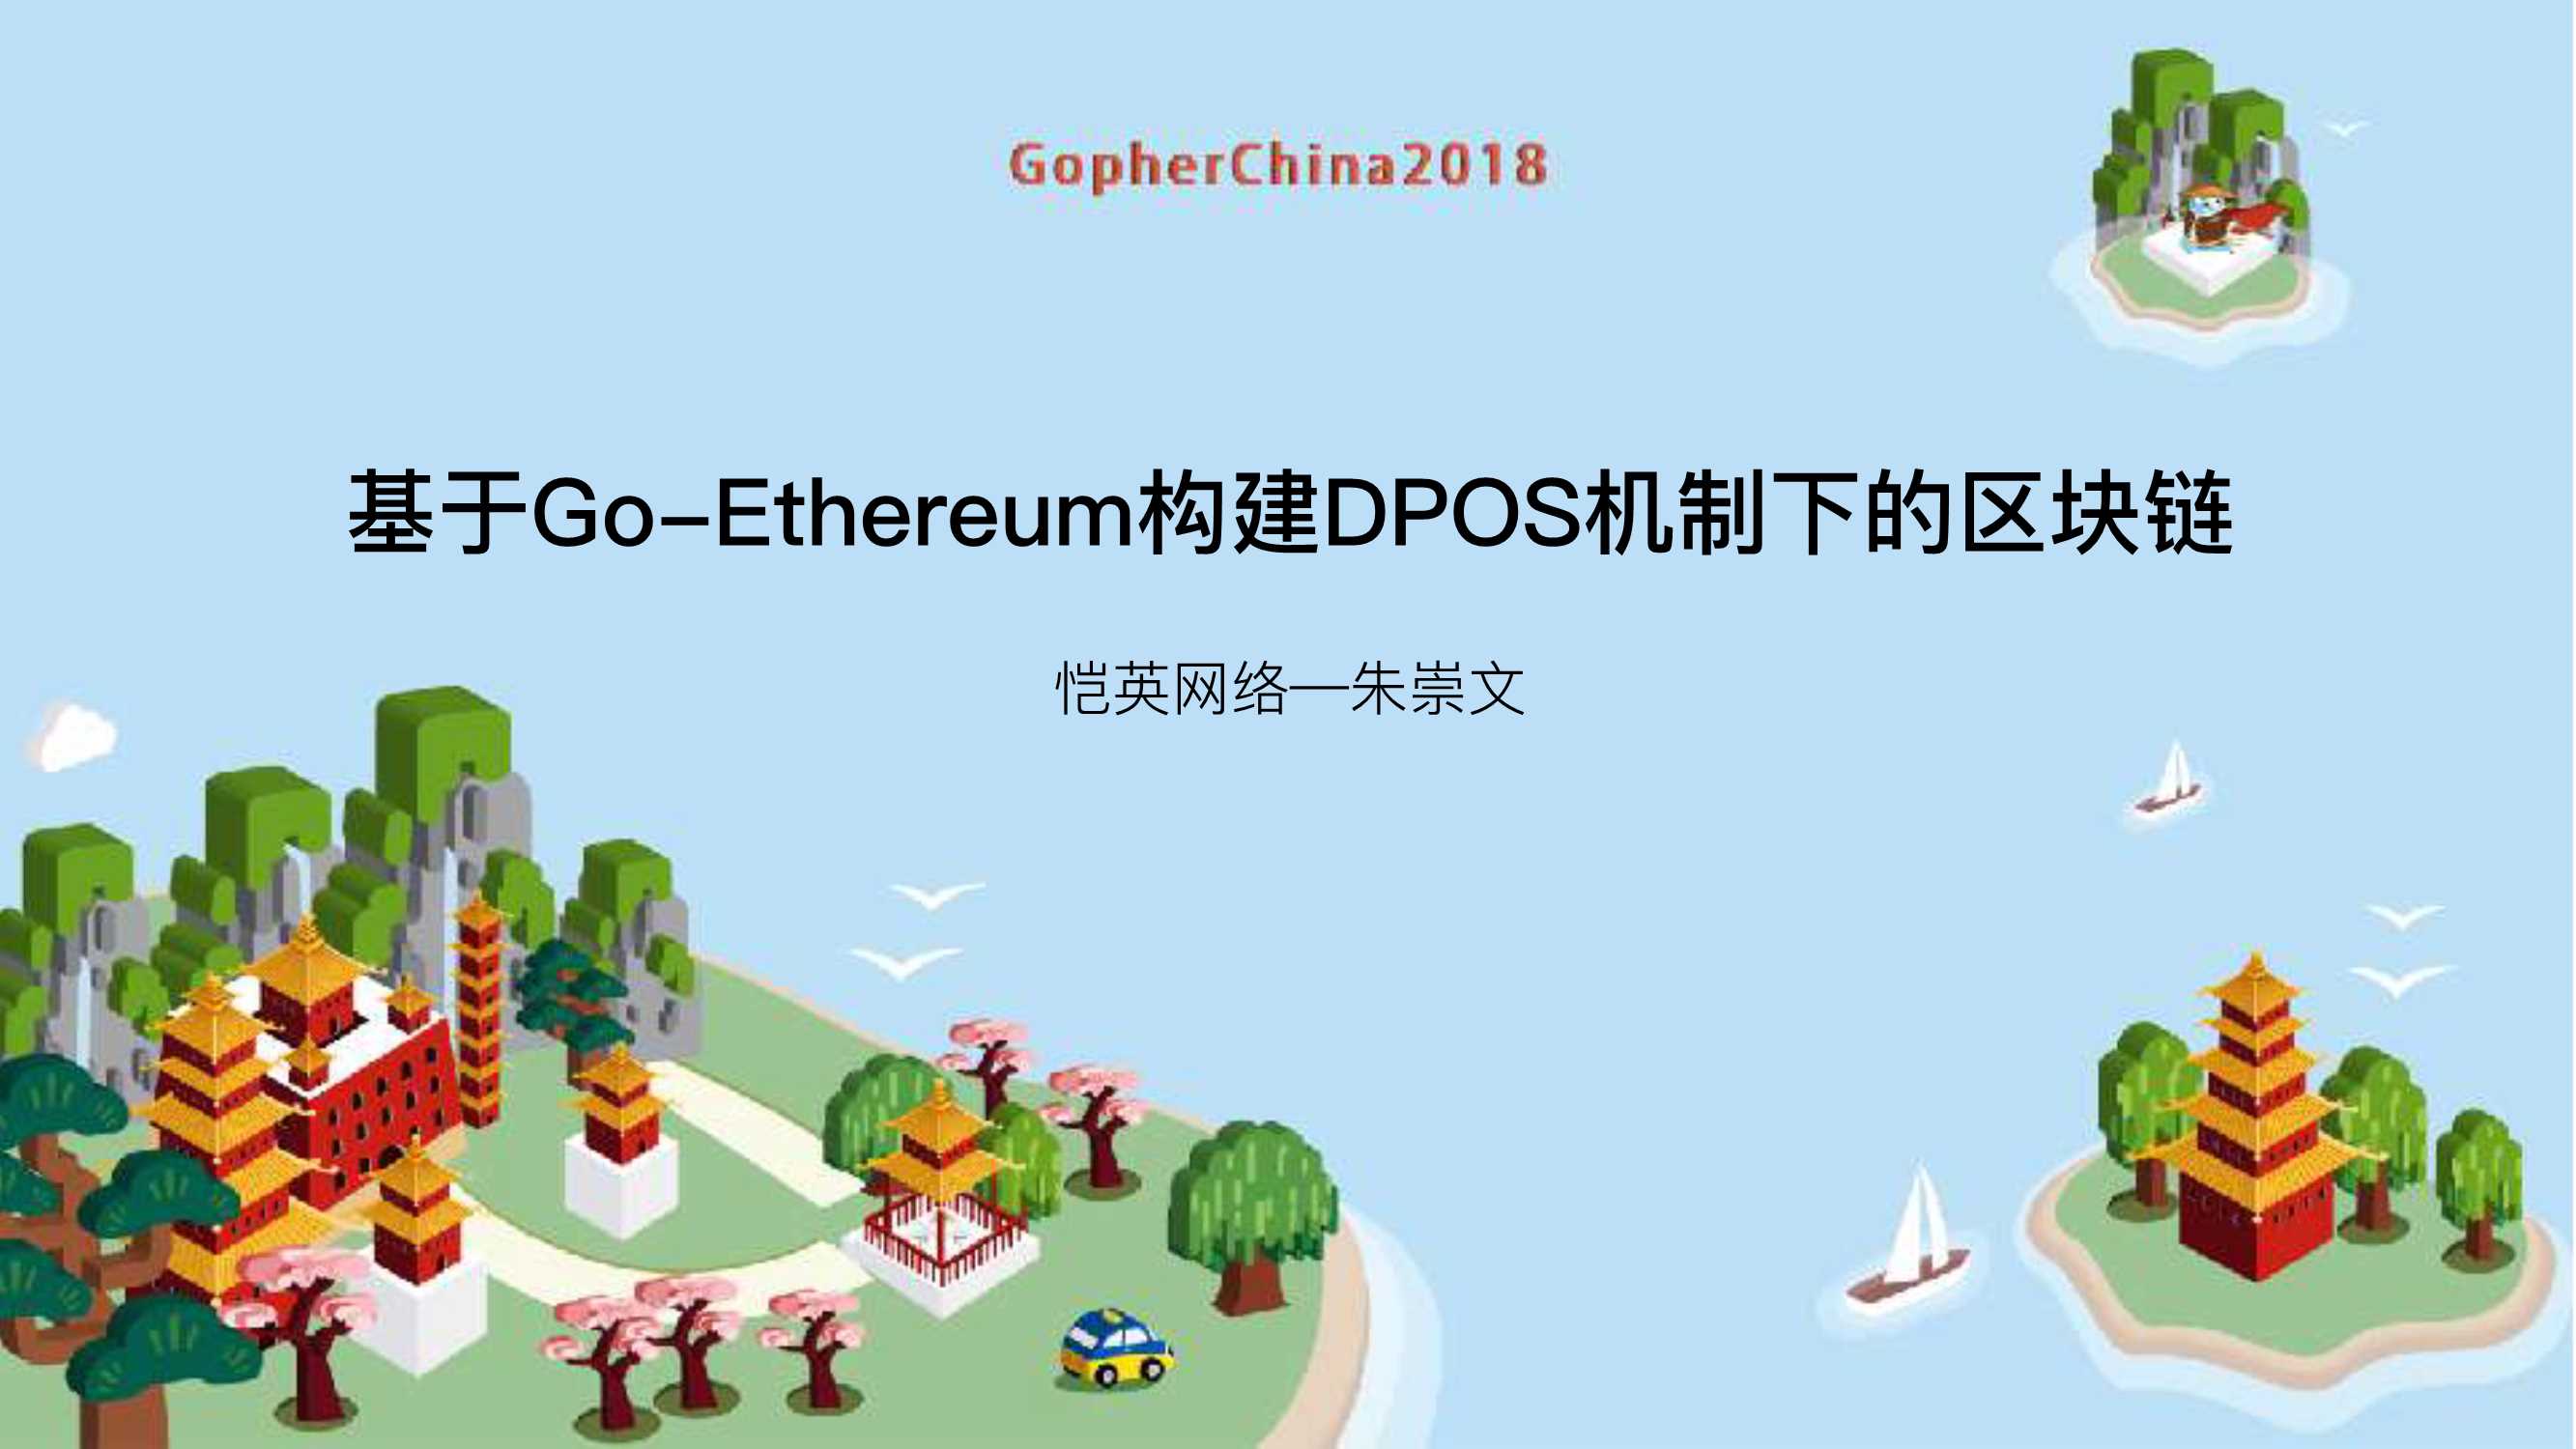 基于Go-Ethereum构建DPOS机制下的区块链-2018-34页